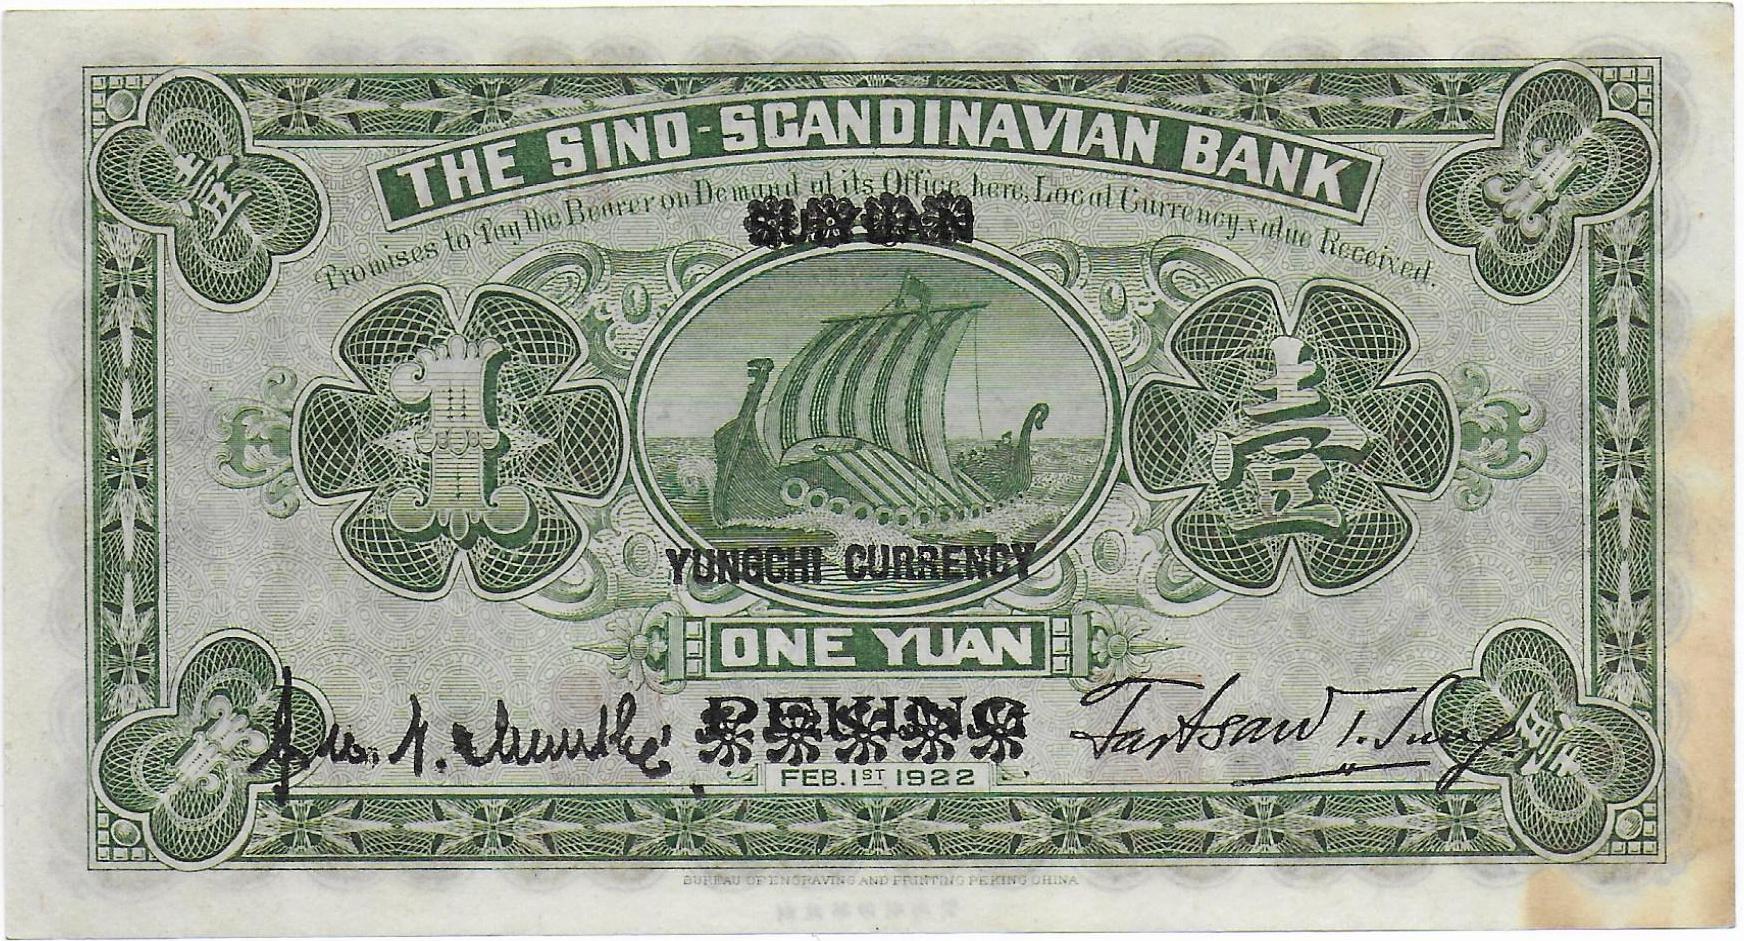 China Sino Scandinavian Bank 1 Yuan 1922 back.jpg